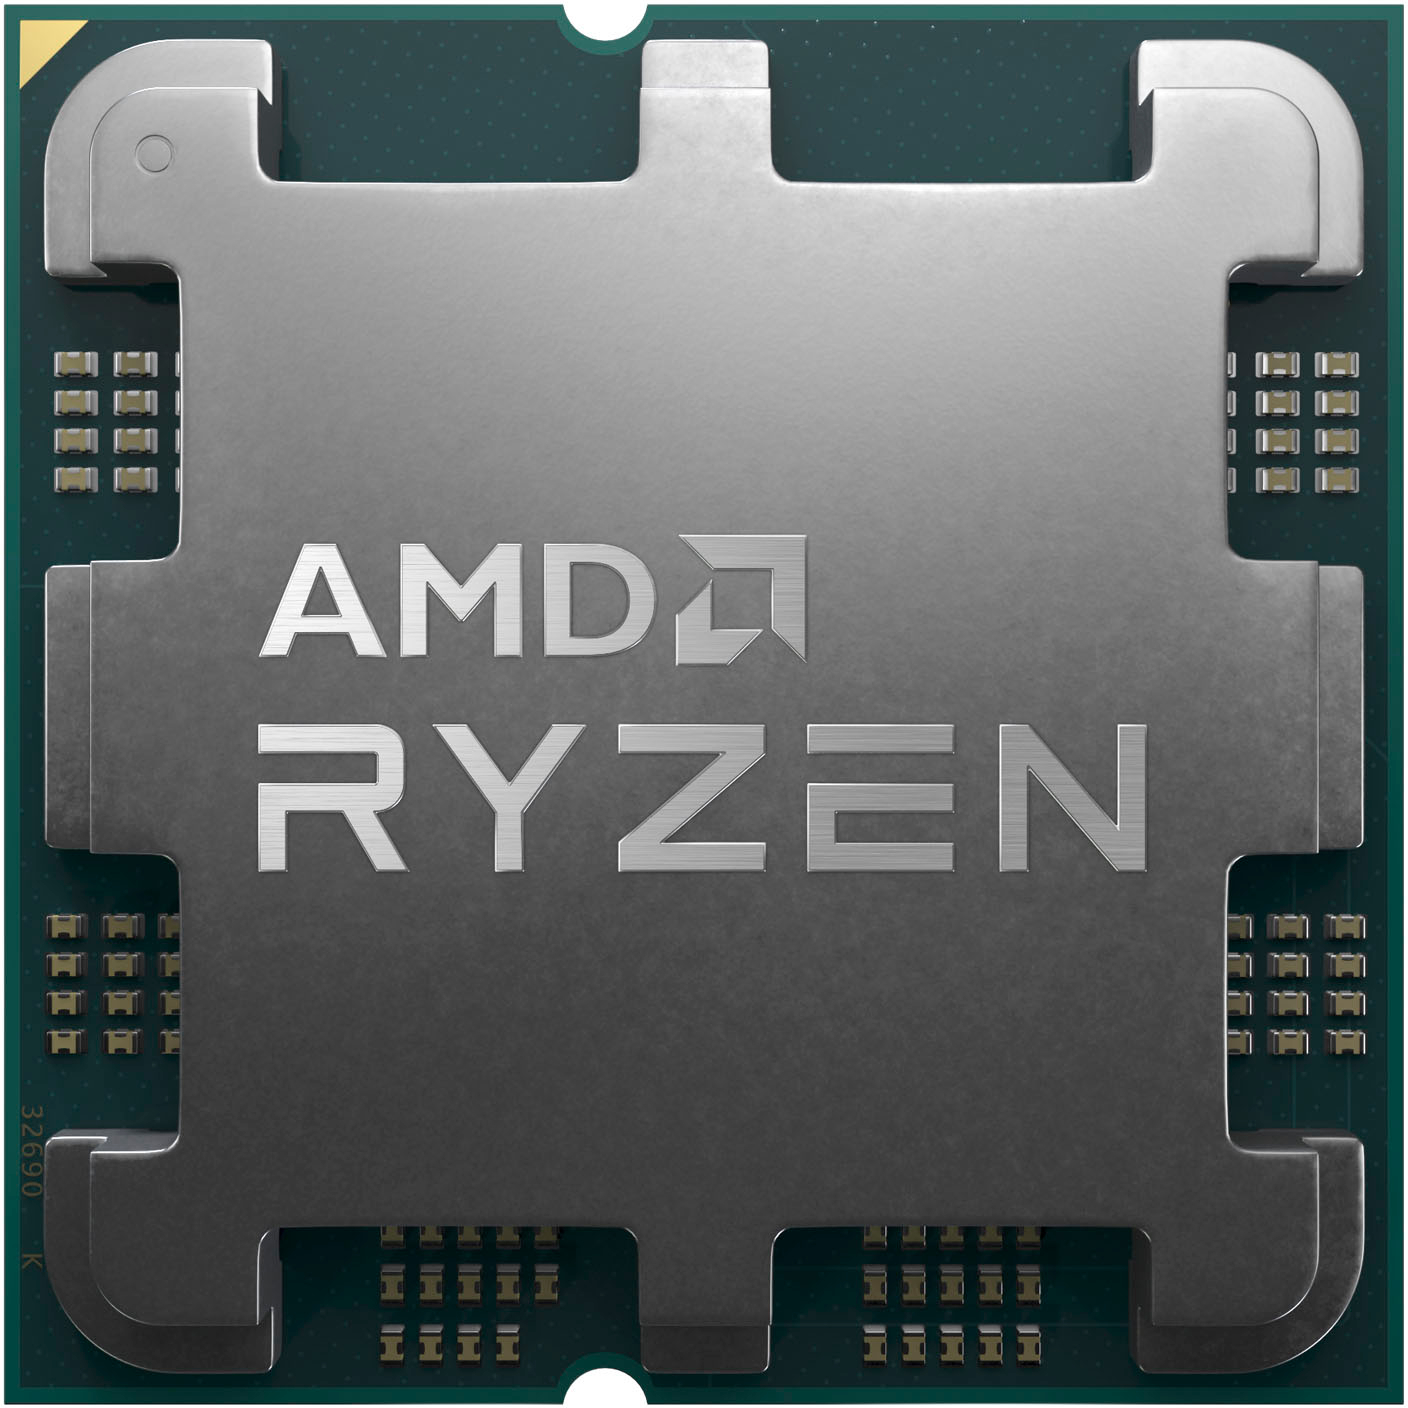 AMD Ryzen 9 7900X 12-core 24-Thread 4.7 GHz (5.6 GHz Max Boost